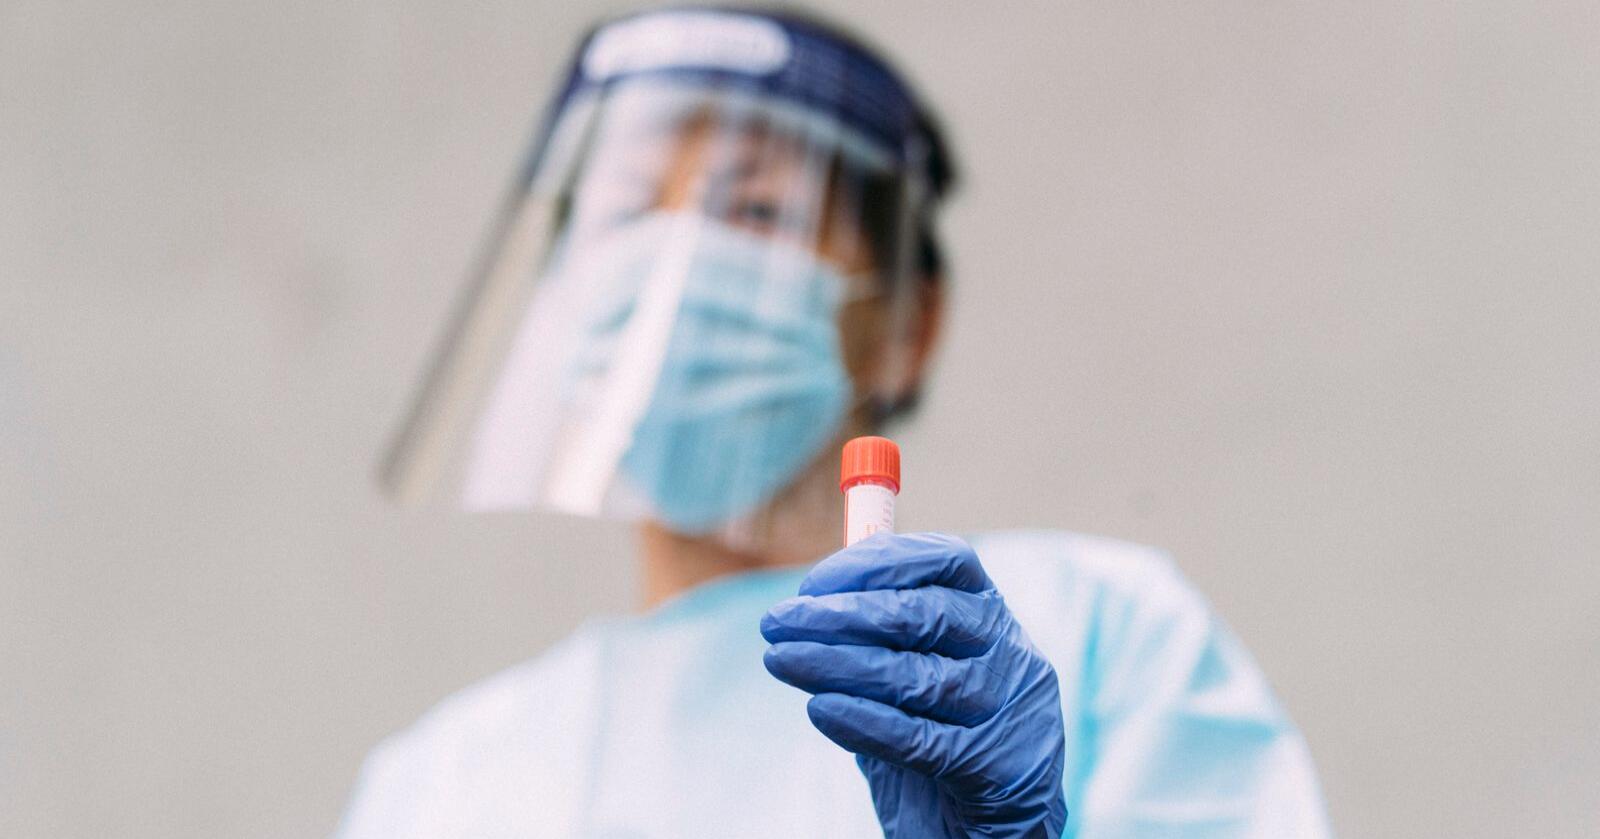 Tidskriftet Lancet skal forske nærmere på covid-19, for å se om verden kunne vært bedre forberedt på pandemien. Foto: Jil Yngland / NTB